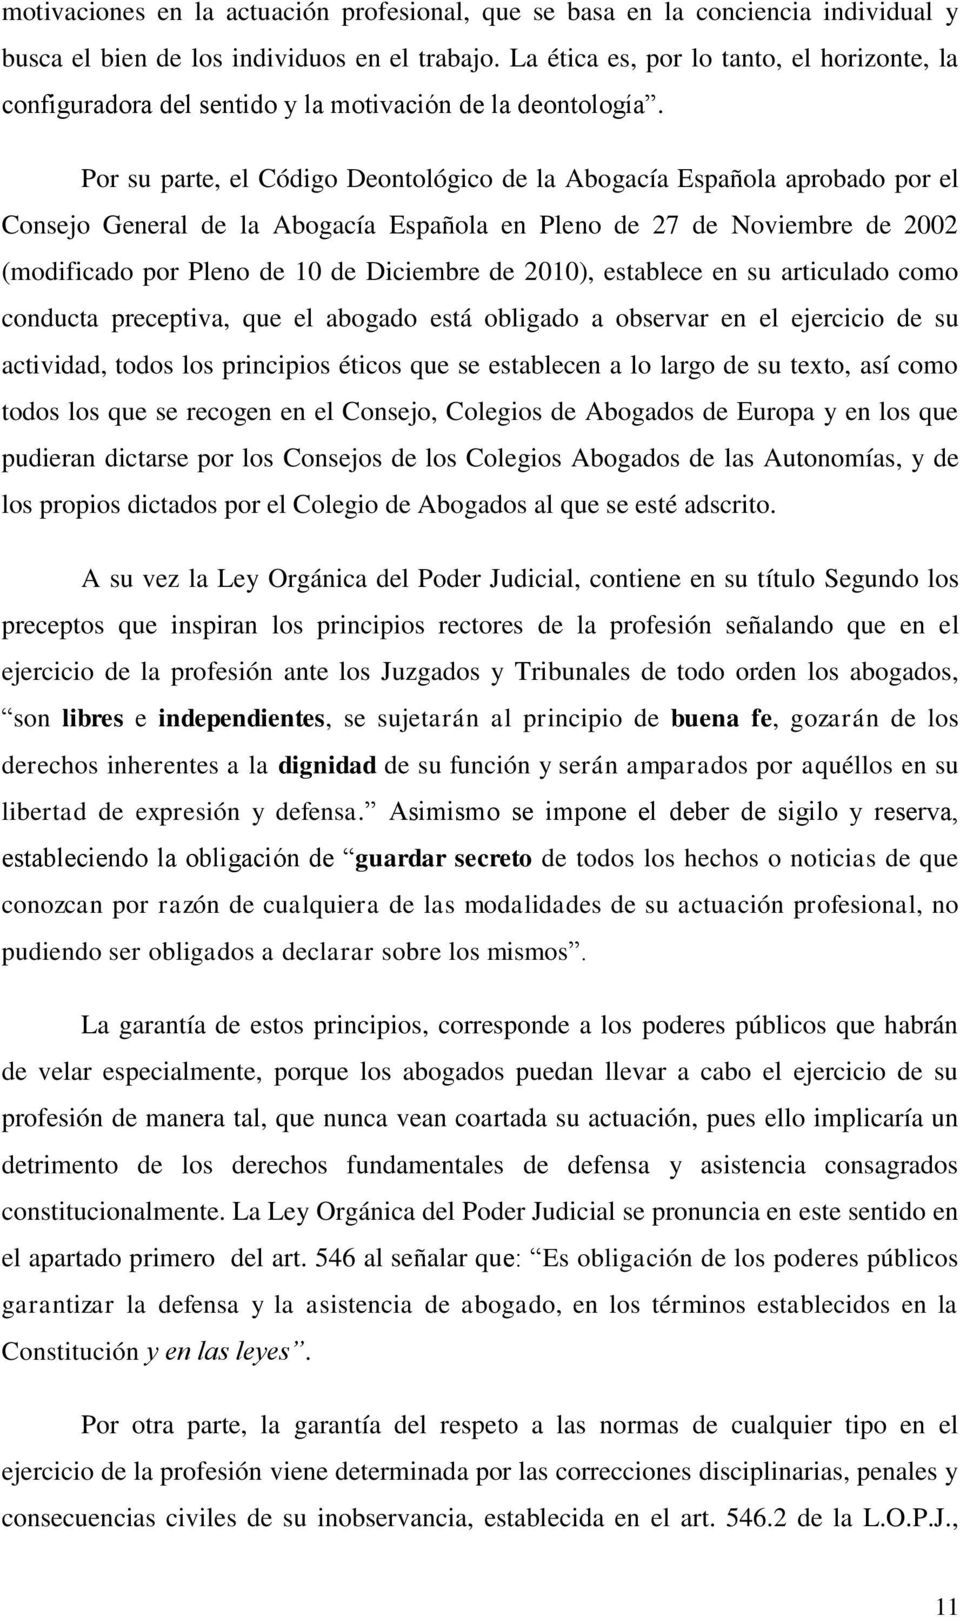 Por su parte, el Código Deontológico de la Abogacía Española aprobado por el Consejo General de la Abogacía Española en Pleno de 27 de Noviembre de 2002 (modificado por Pleno de 10 de Diciembre de